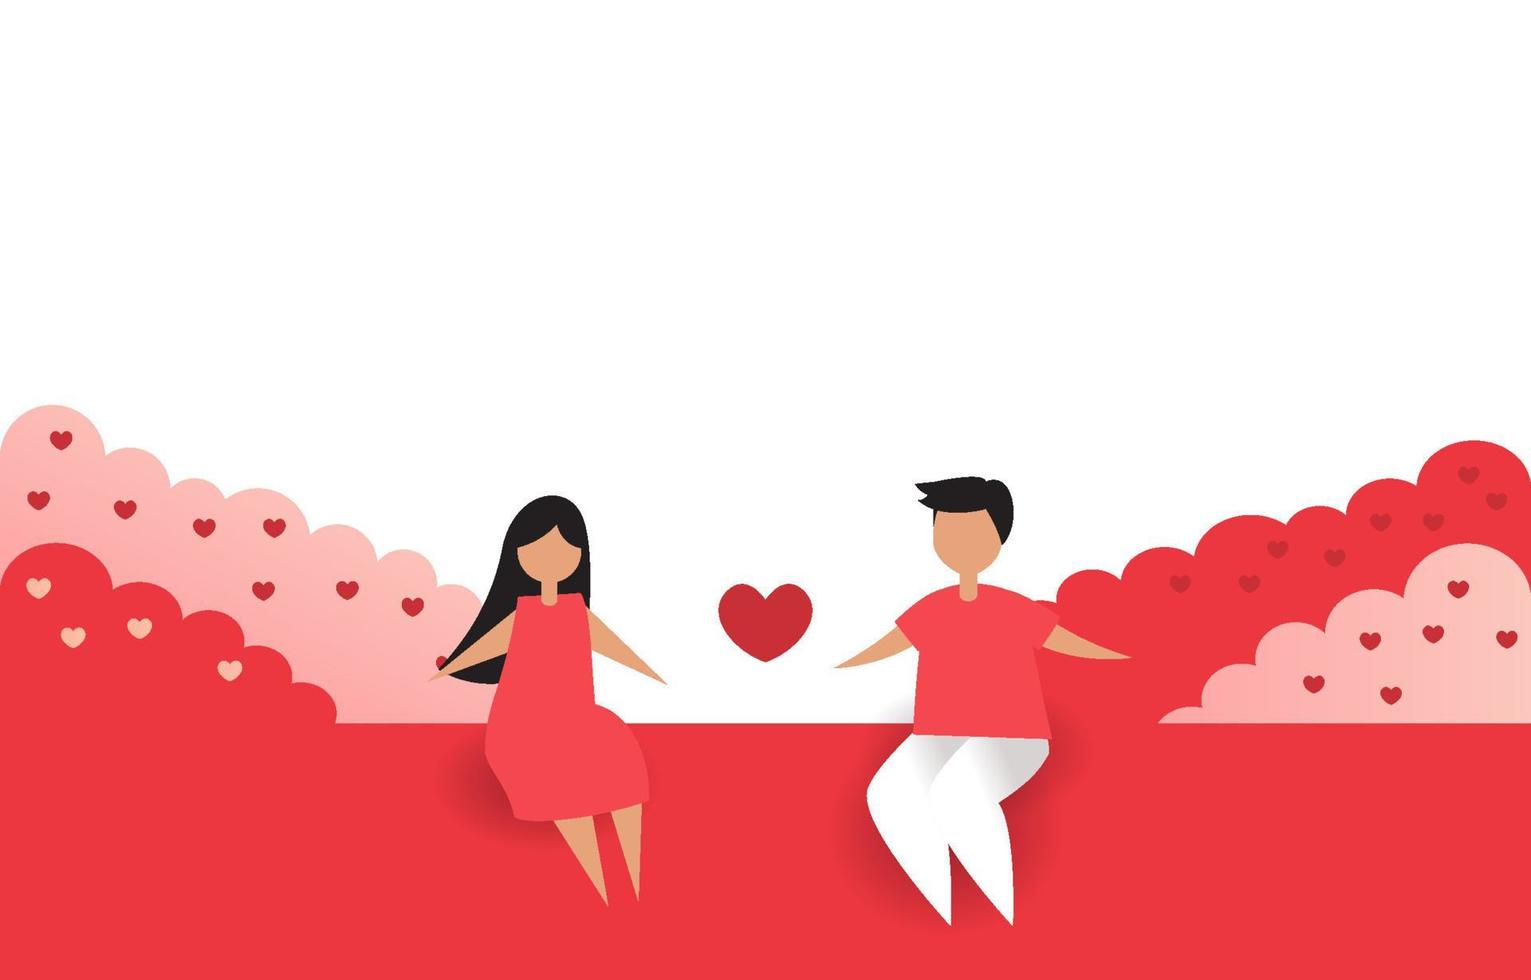 par som sitter tillsammans. illustration vektor har kopia utrymme. kärlek eller alla hjärtans koncept. buske dekorerad med hjärtform. rosa och röd bakgrund. design för kort, banner, webb.